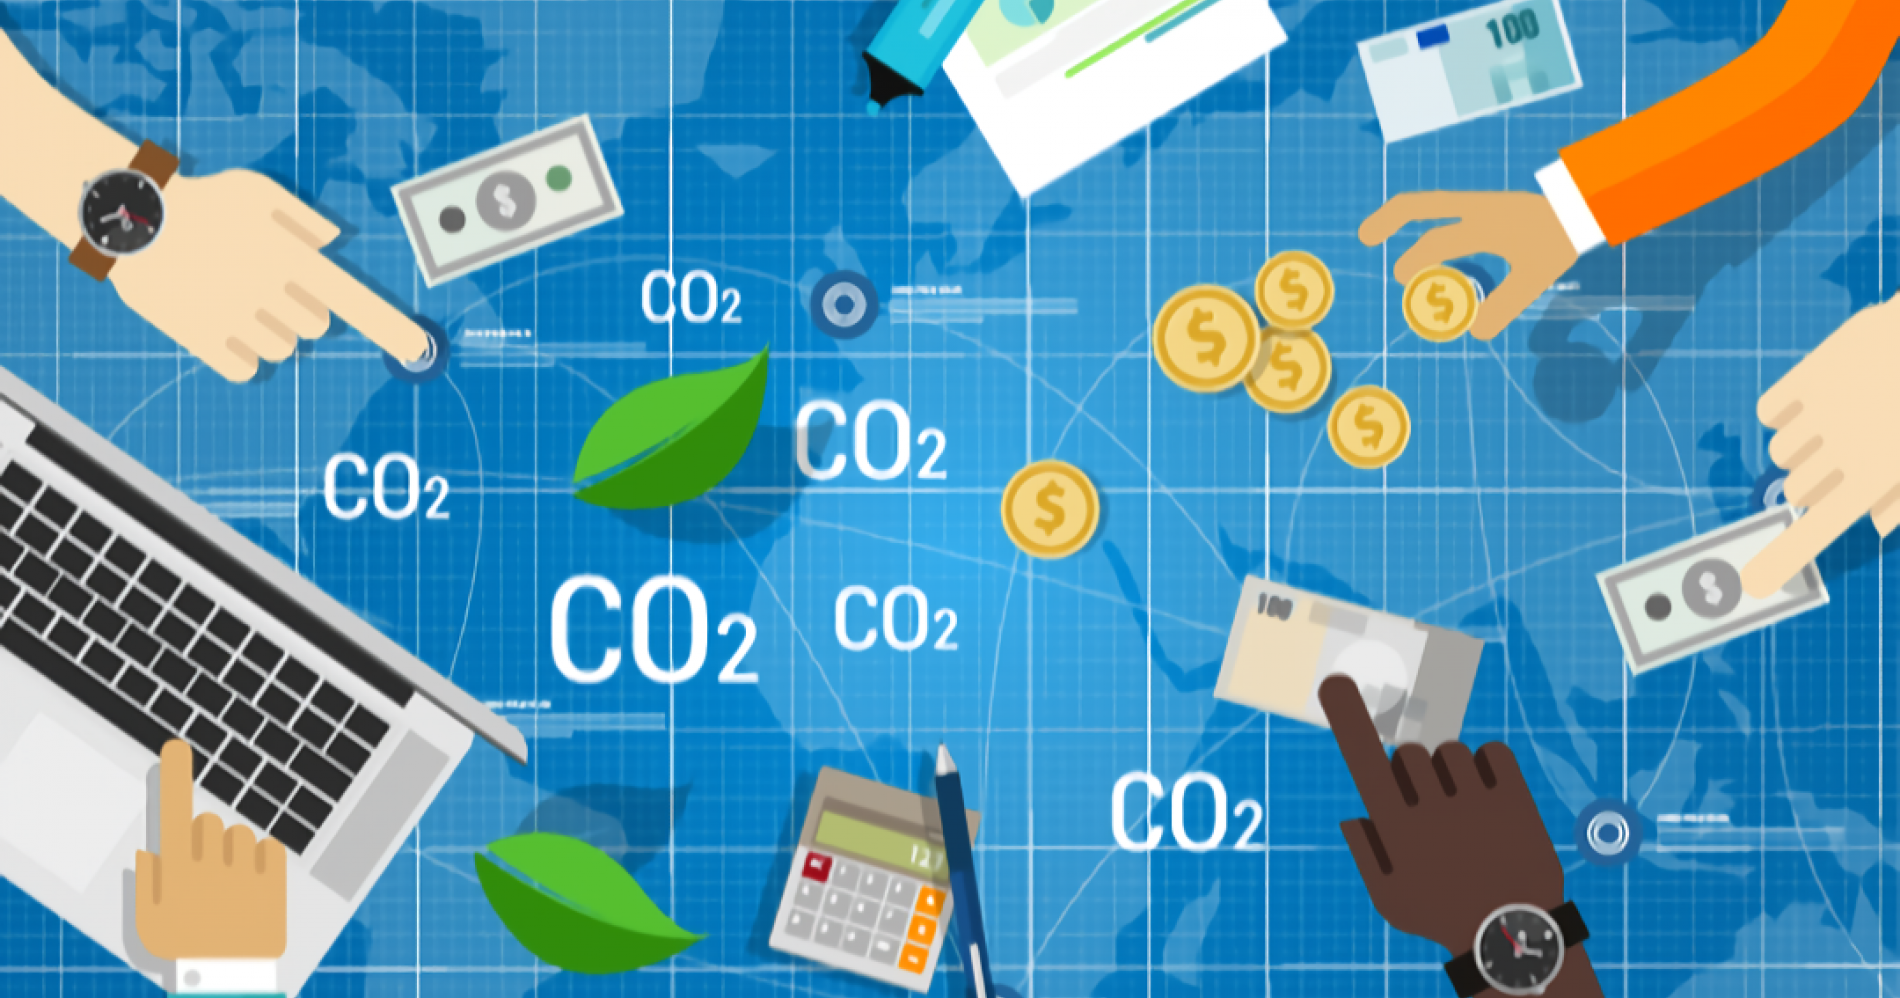 Bisnis carbon trading yang menjanjikan (sumber gambar: premiumtimes)